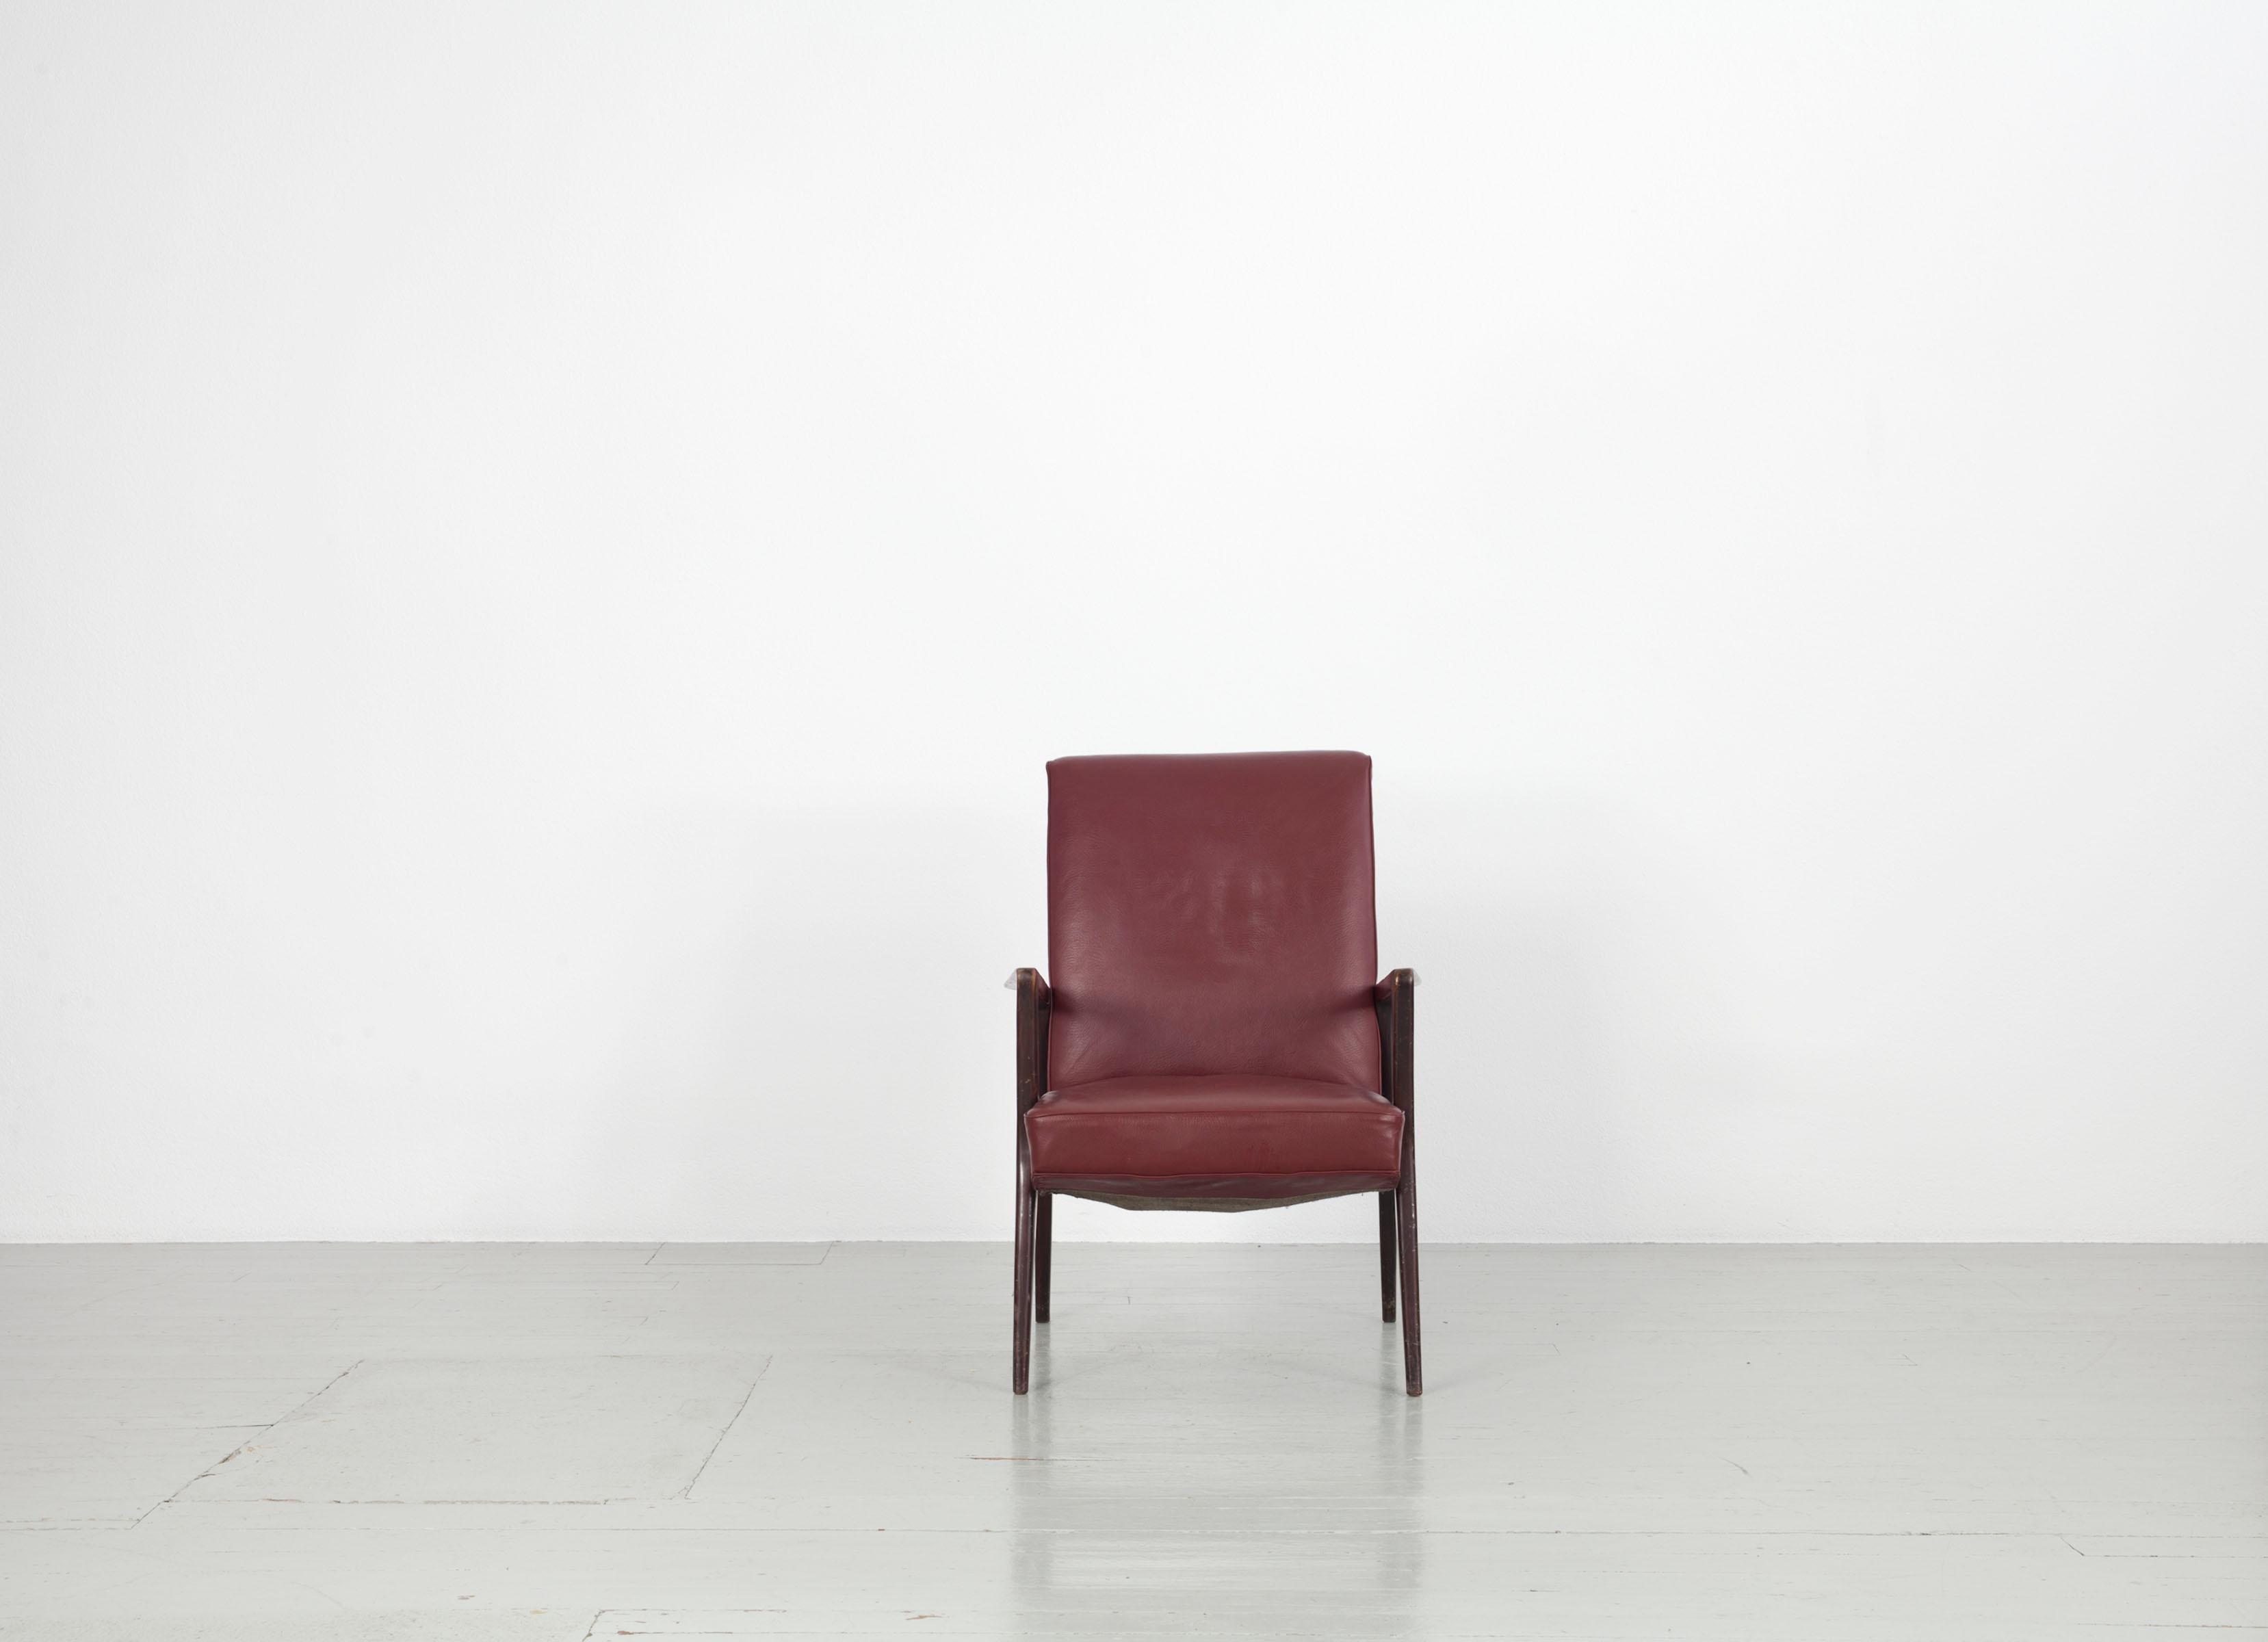 Dieser Satz von fünf Sesseln wurde in den 1950er Jahren in Italien hergestellt. Der Möbelkorpus aus dunkelrotem, originalem Lederimitat ruht auf einem dunkel gebeizten Holzrahmen. Der Sessel weist deutlich sichtbare Gebrauchsspuren auf.

Zögern Sie